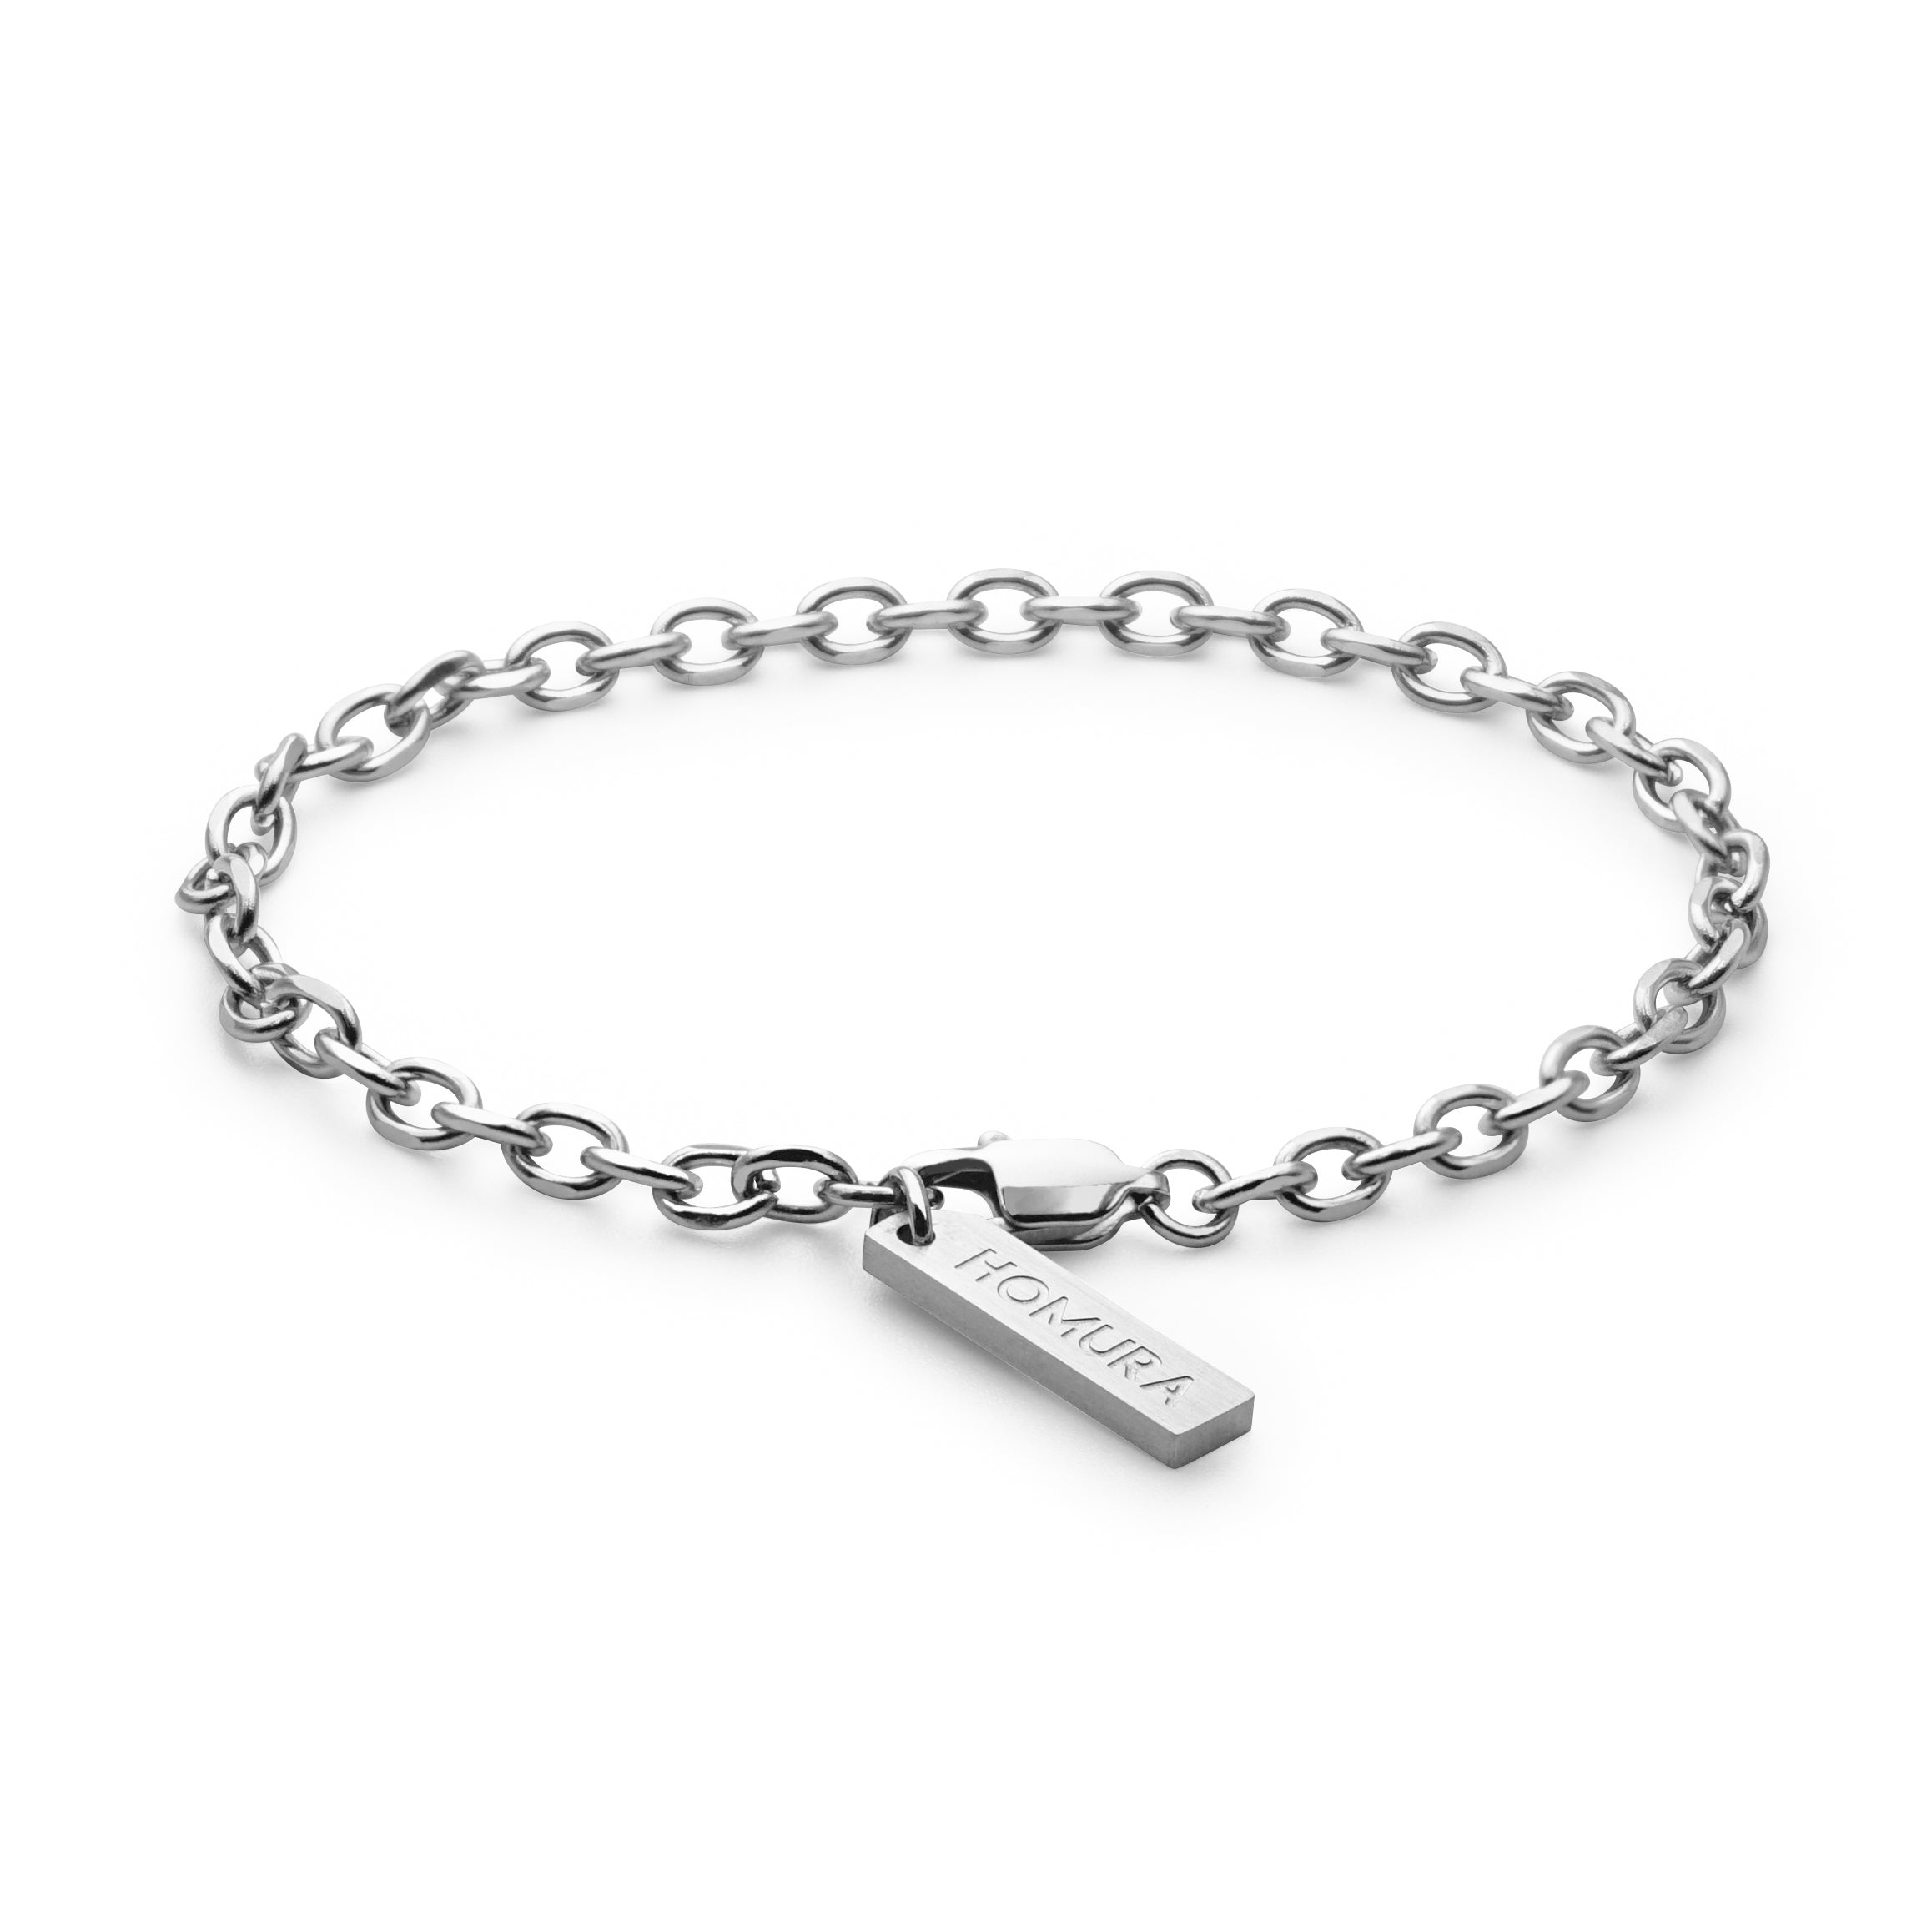 Precursor® Chain, Bracelet